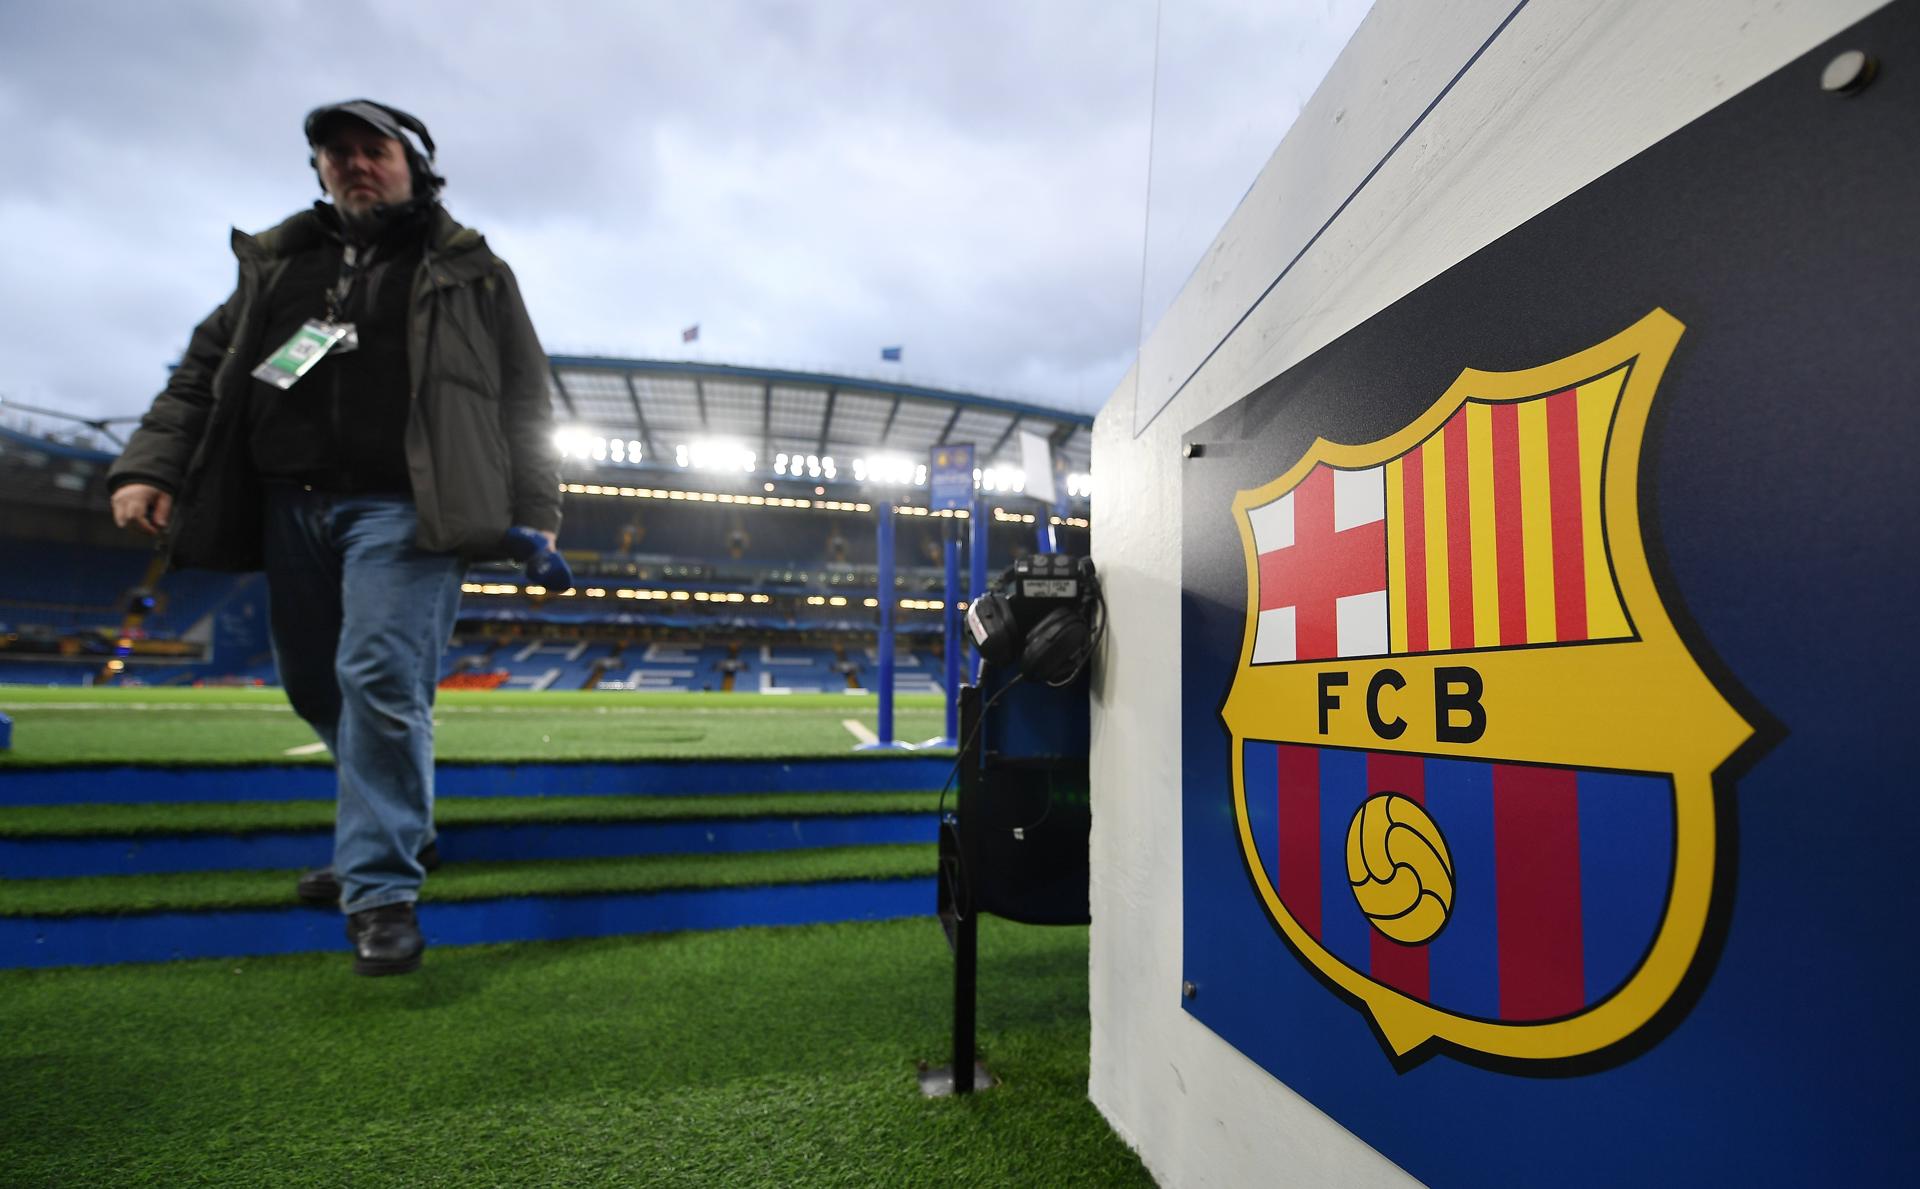 Vista del escudo del FC Barcelona en el estadio Stamford Bridge de Londres, Reino Unido, en una imagen de archivo. EFE/Andy Rain